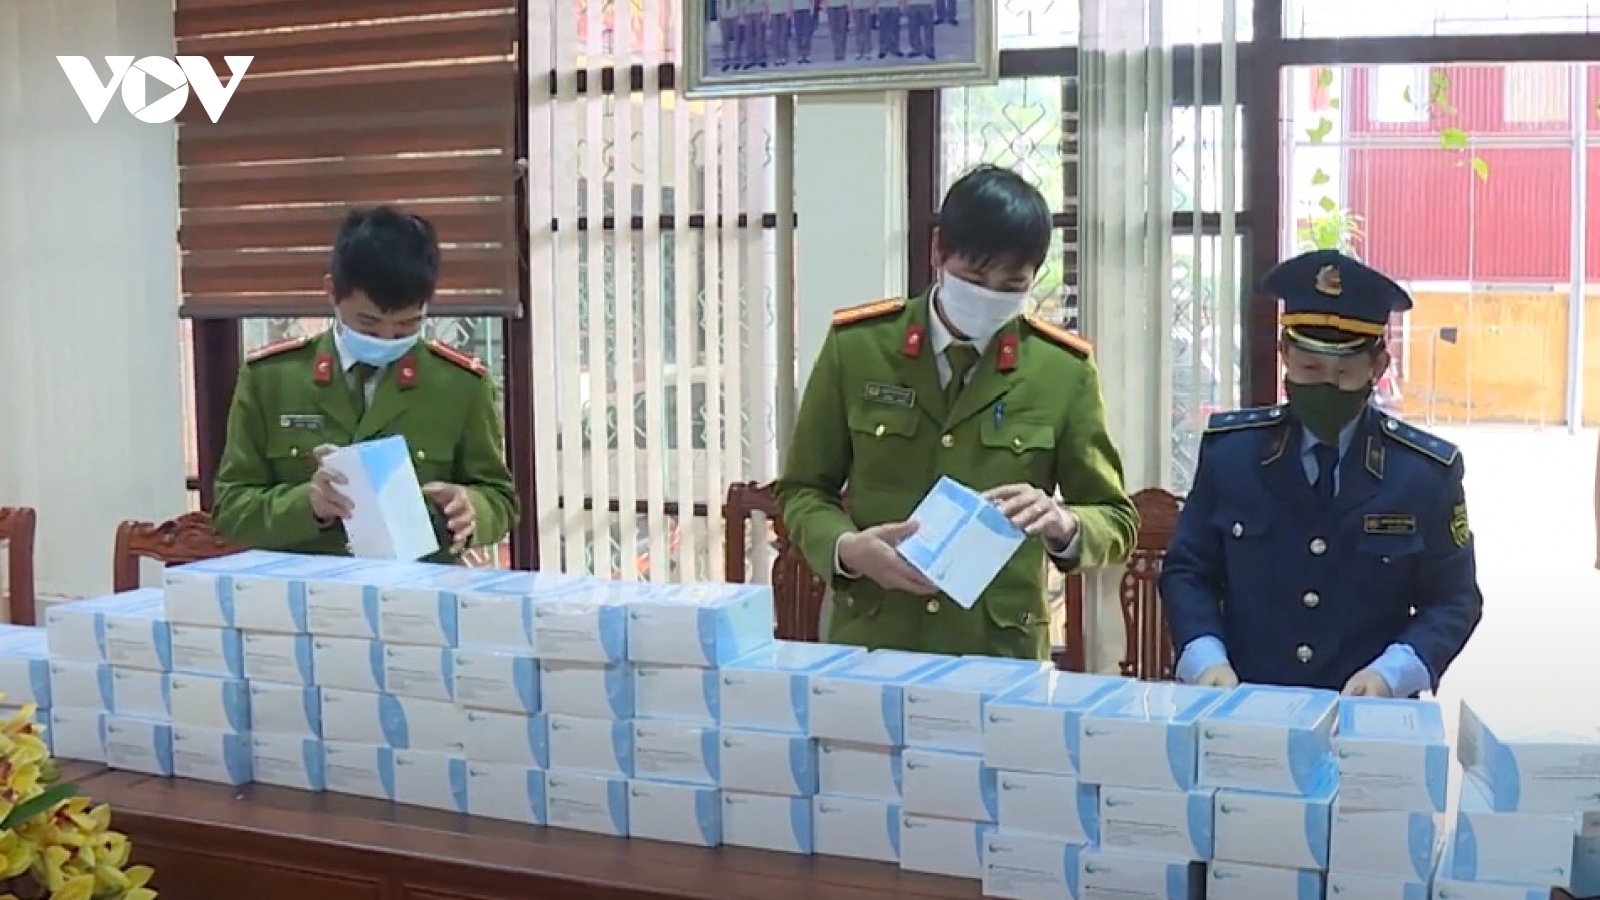 Bắc Ninh tạm giữ hàng nghìn kit xét nghiệm COVID-19 không rõ nguồn gốc